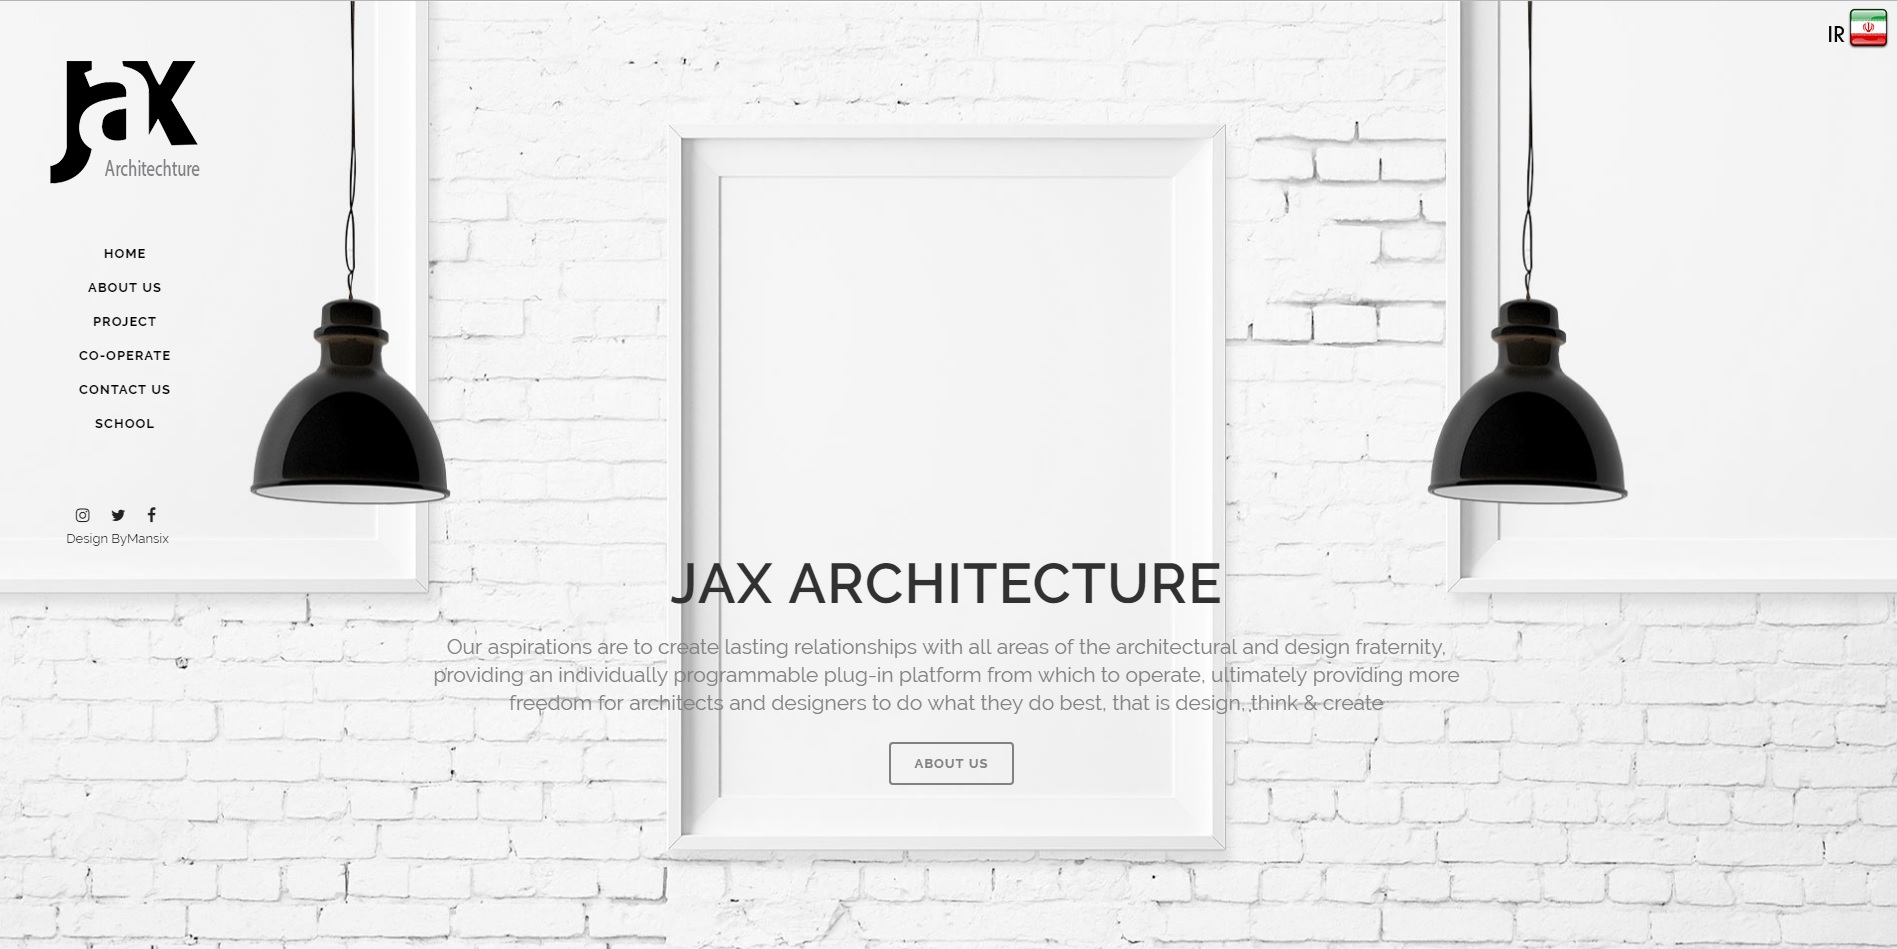 وب سایت معماری ژاکس